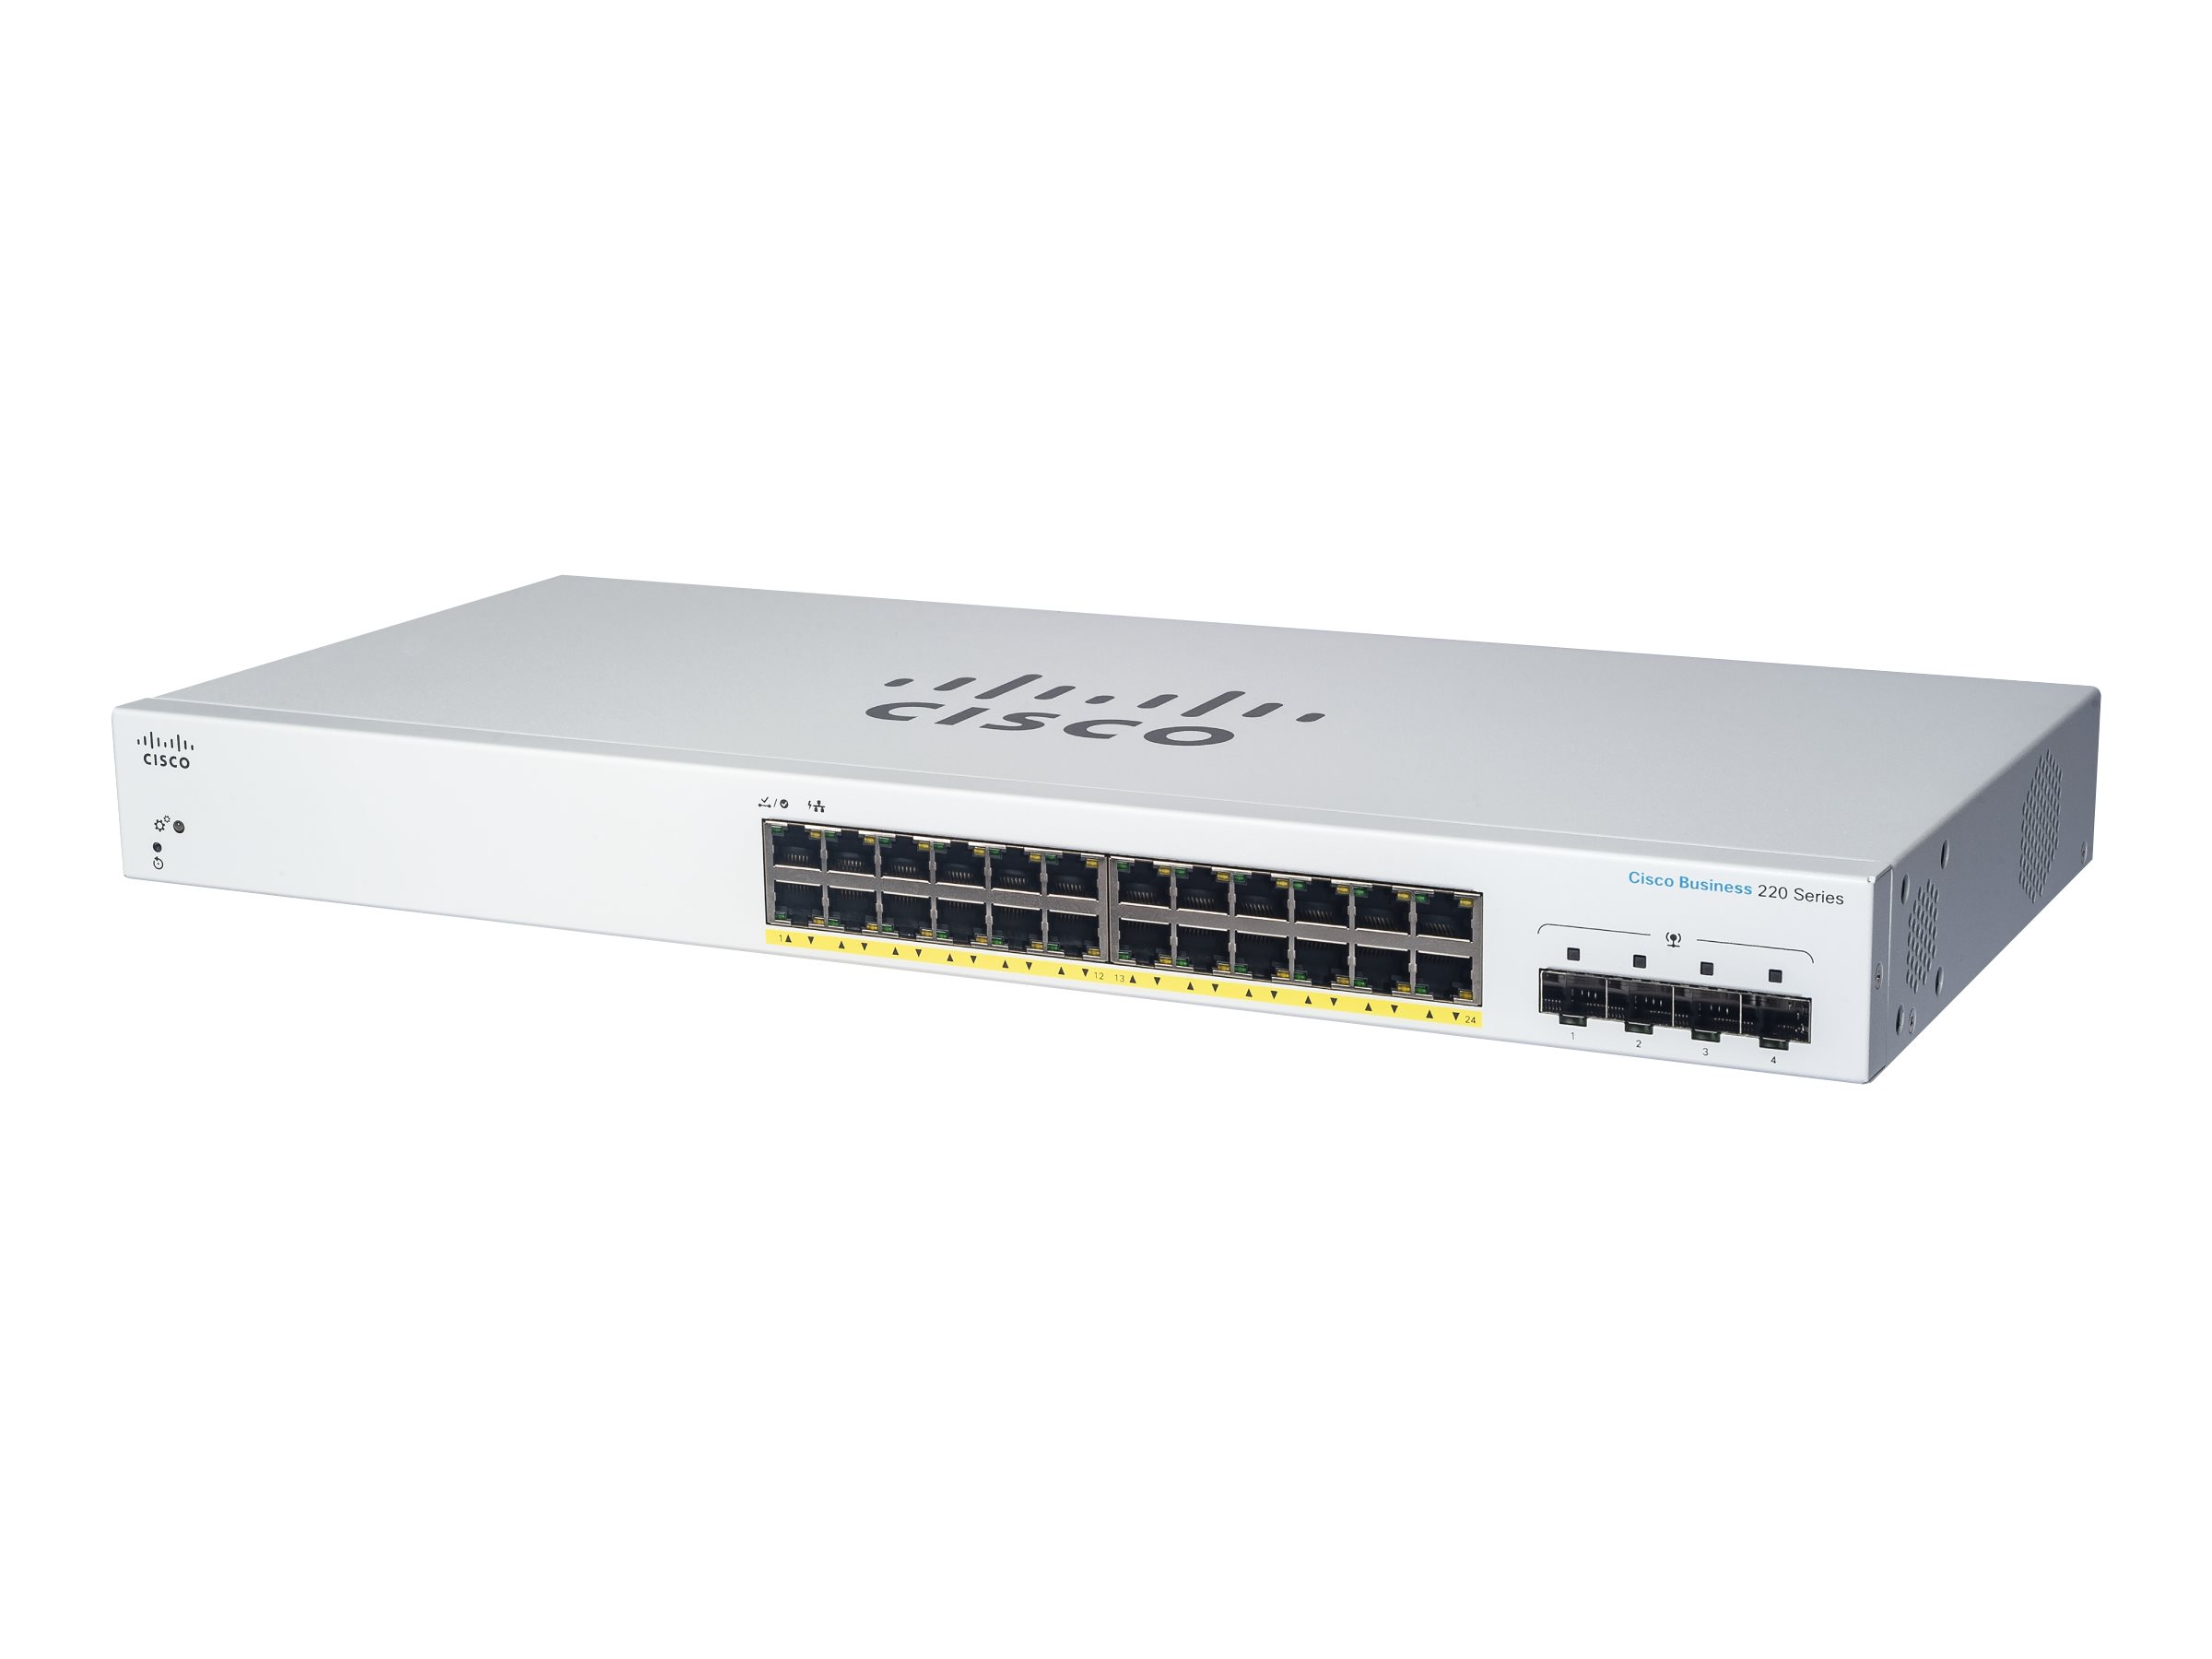 CISCO Business Switching CBS220 Smart 24-port Gigabit 4x1G SFP uplink [Towar z magazynu zewnętrznego (na specjalne zamówienie). Towar nie podlega zwrotowi. Czas oczekiwania do 5 dni roboczych.]